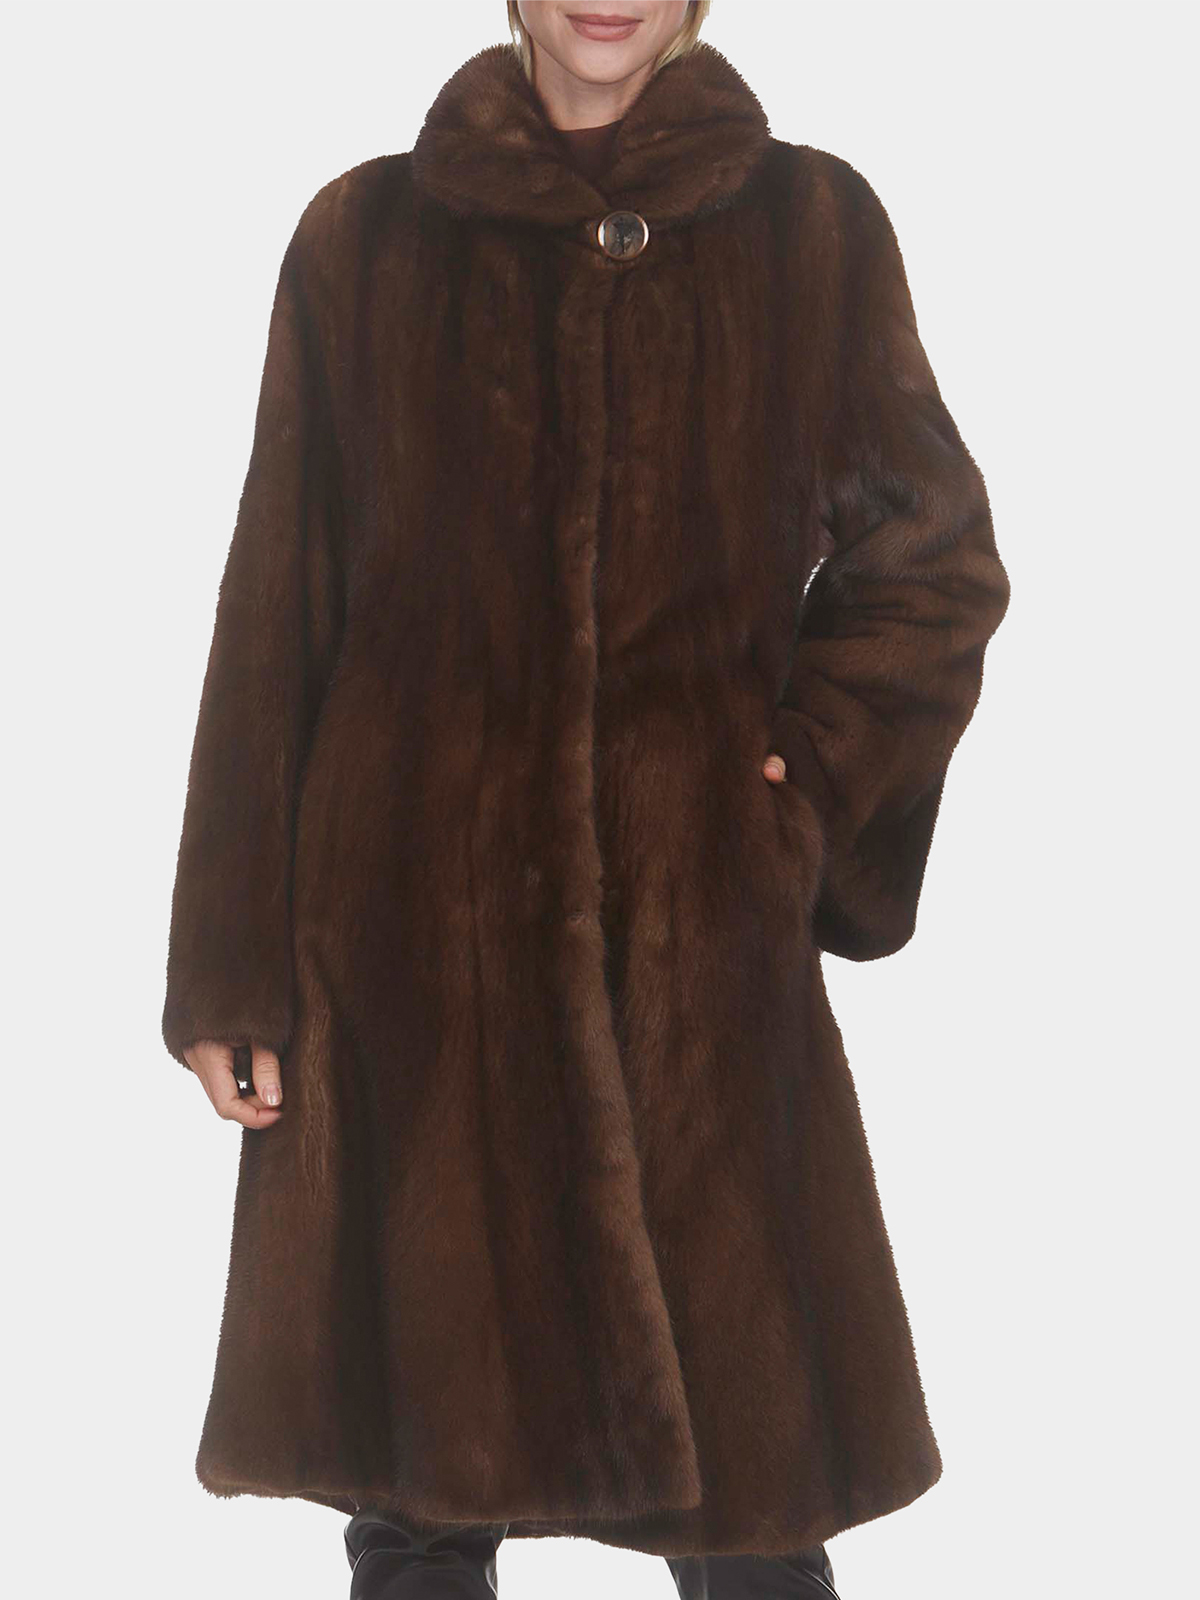 Gorski Scanbrown Mink Fur Short Coat (Women's Large) - Day Furs